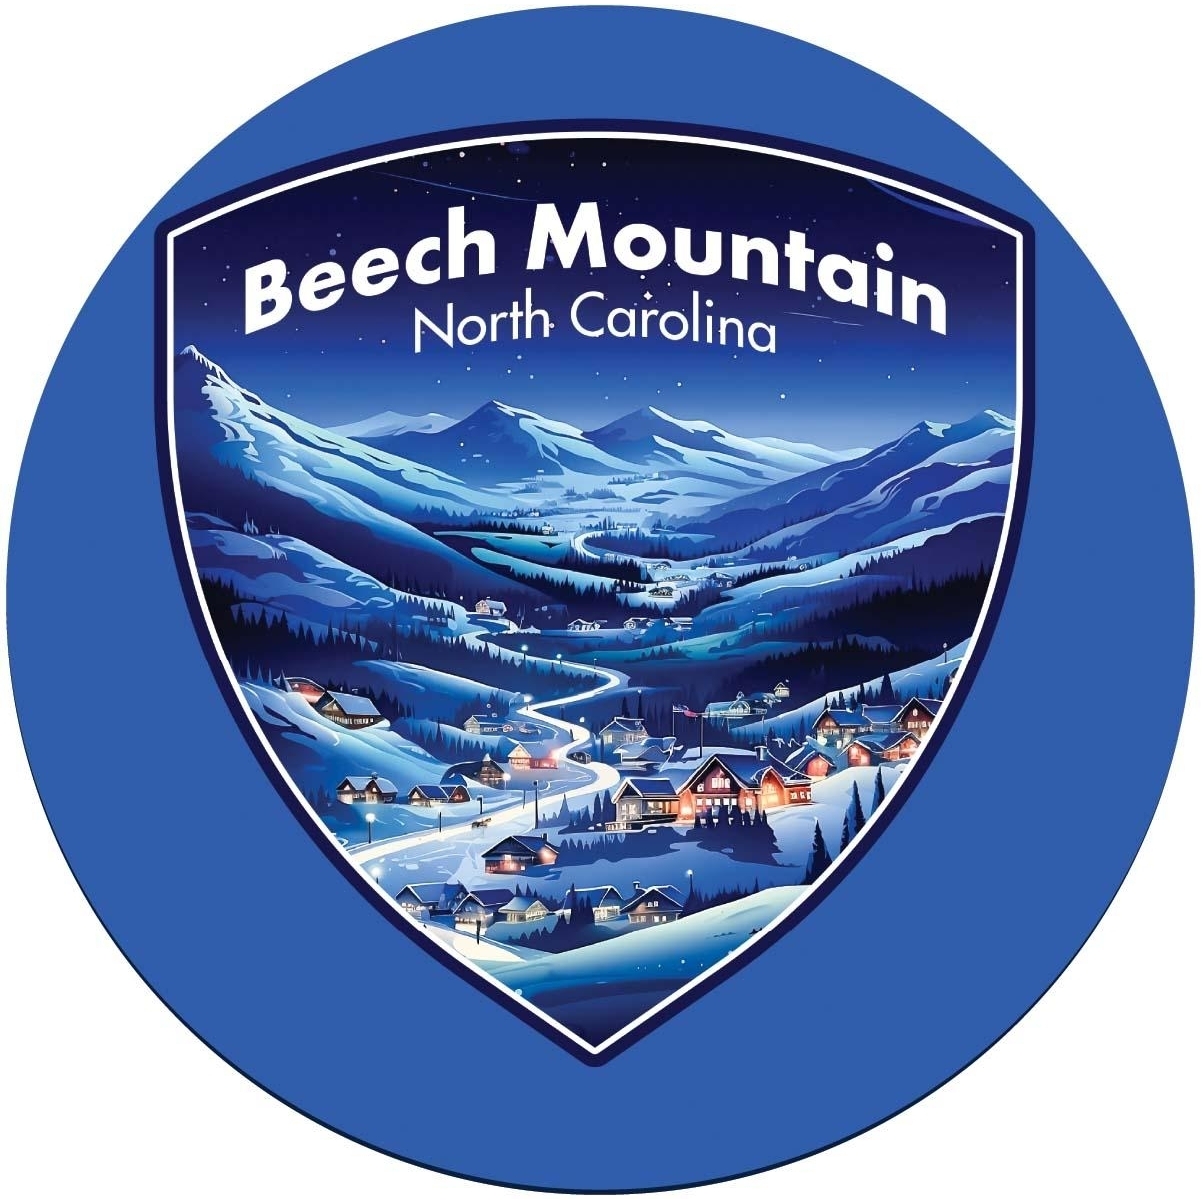 Beech Mountain North Carolina A Souvenir Round Vinyl Decal Sticker - 6-Inch